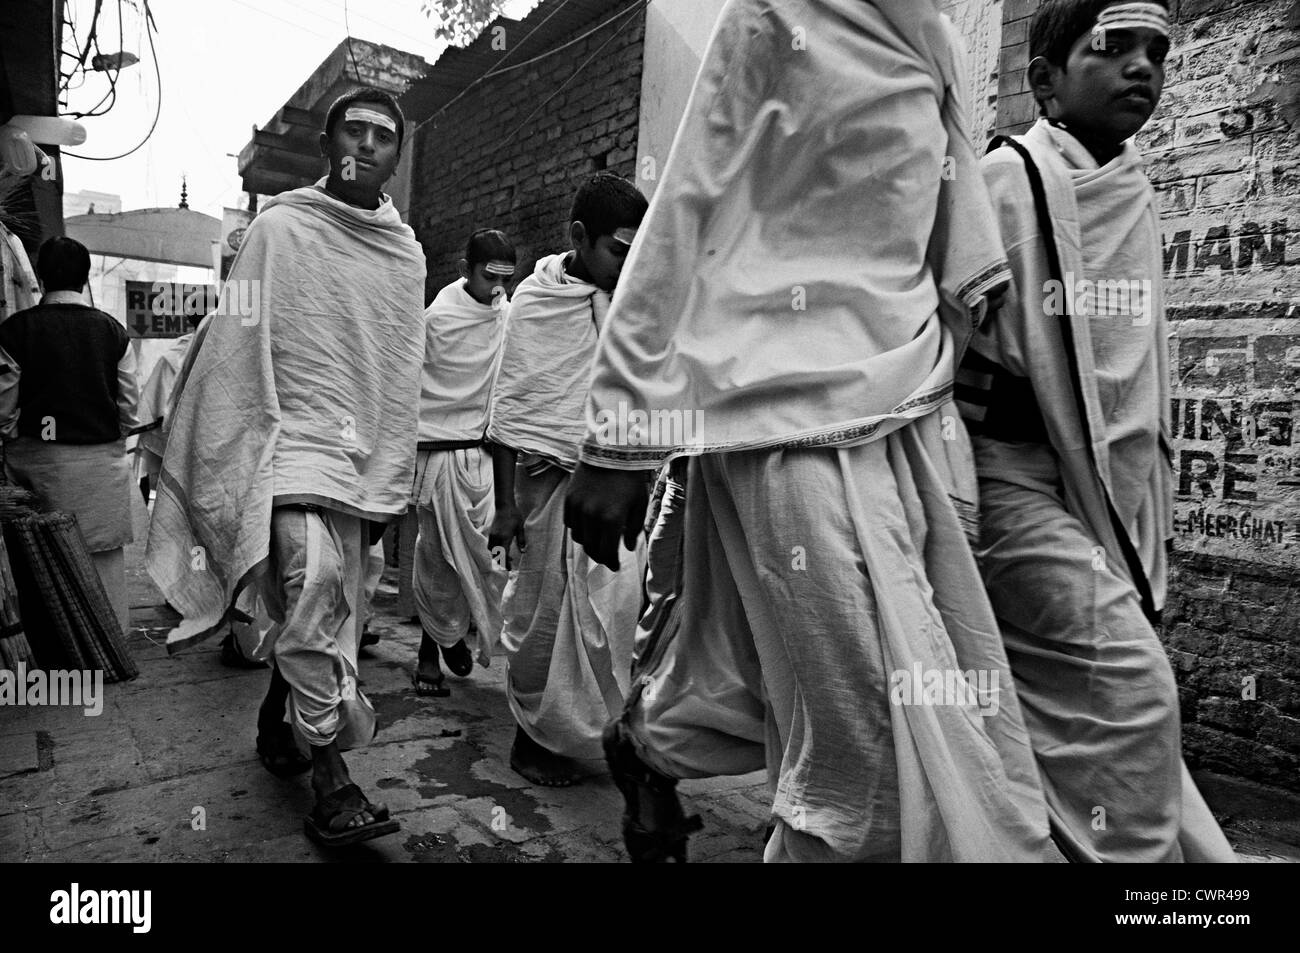 Groupe d'étudiants portant des tuniques blanches passent par une ruelle. Varanassi, Uttar Pradesh, Inde Banque D'Images